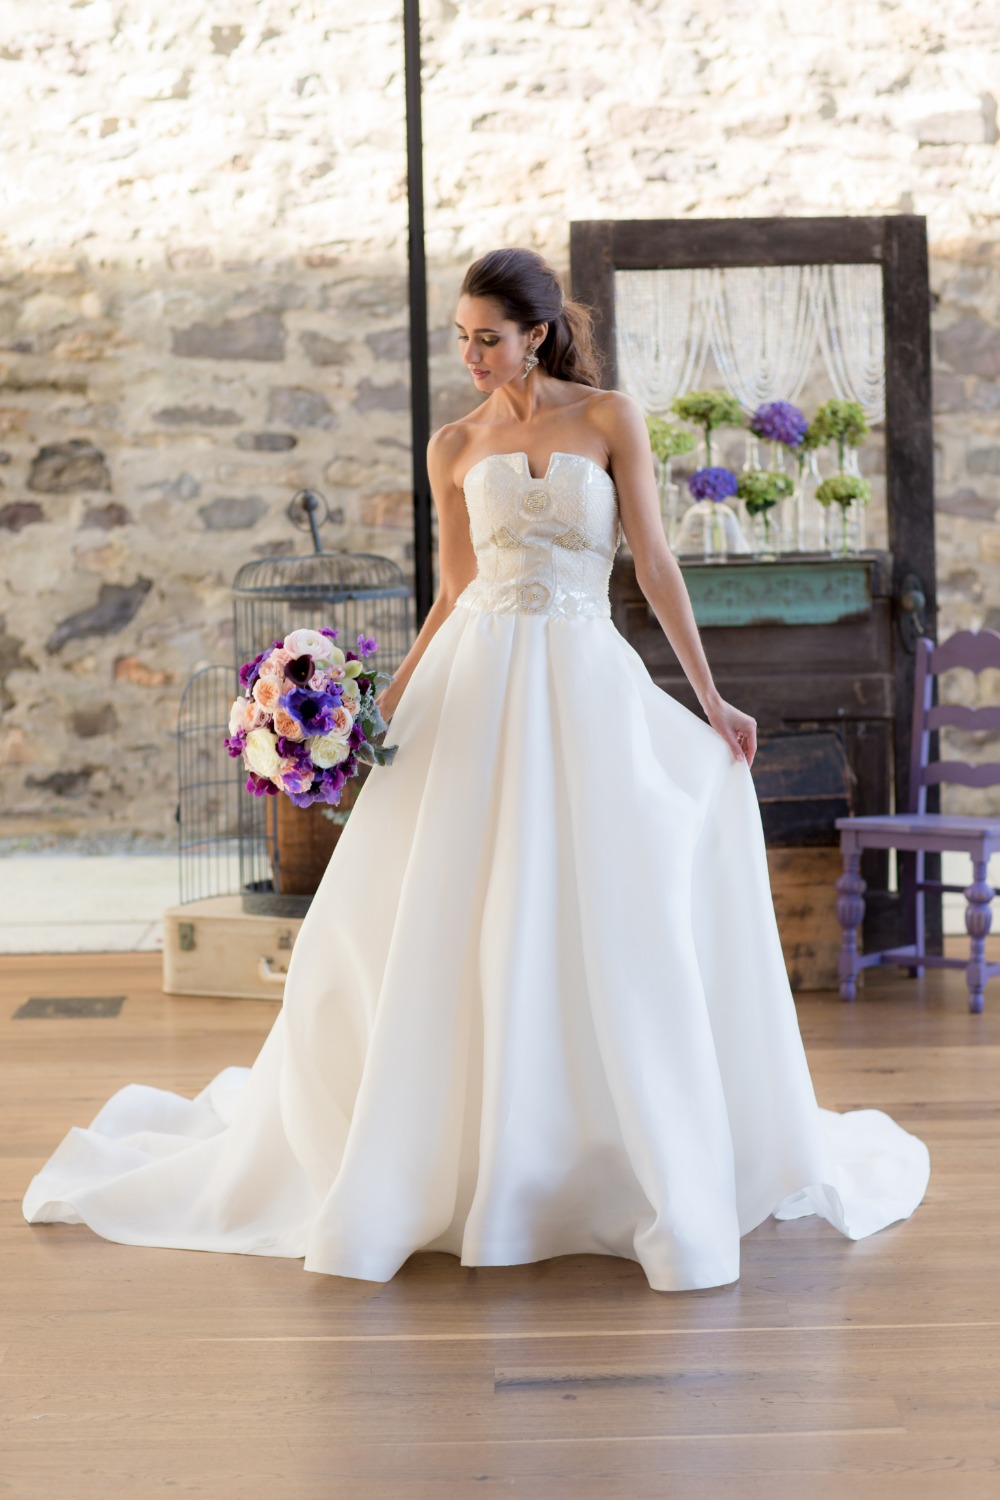 Sequin top wedding dress